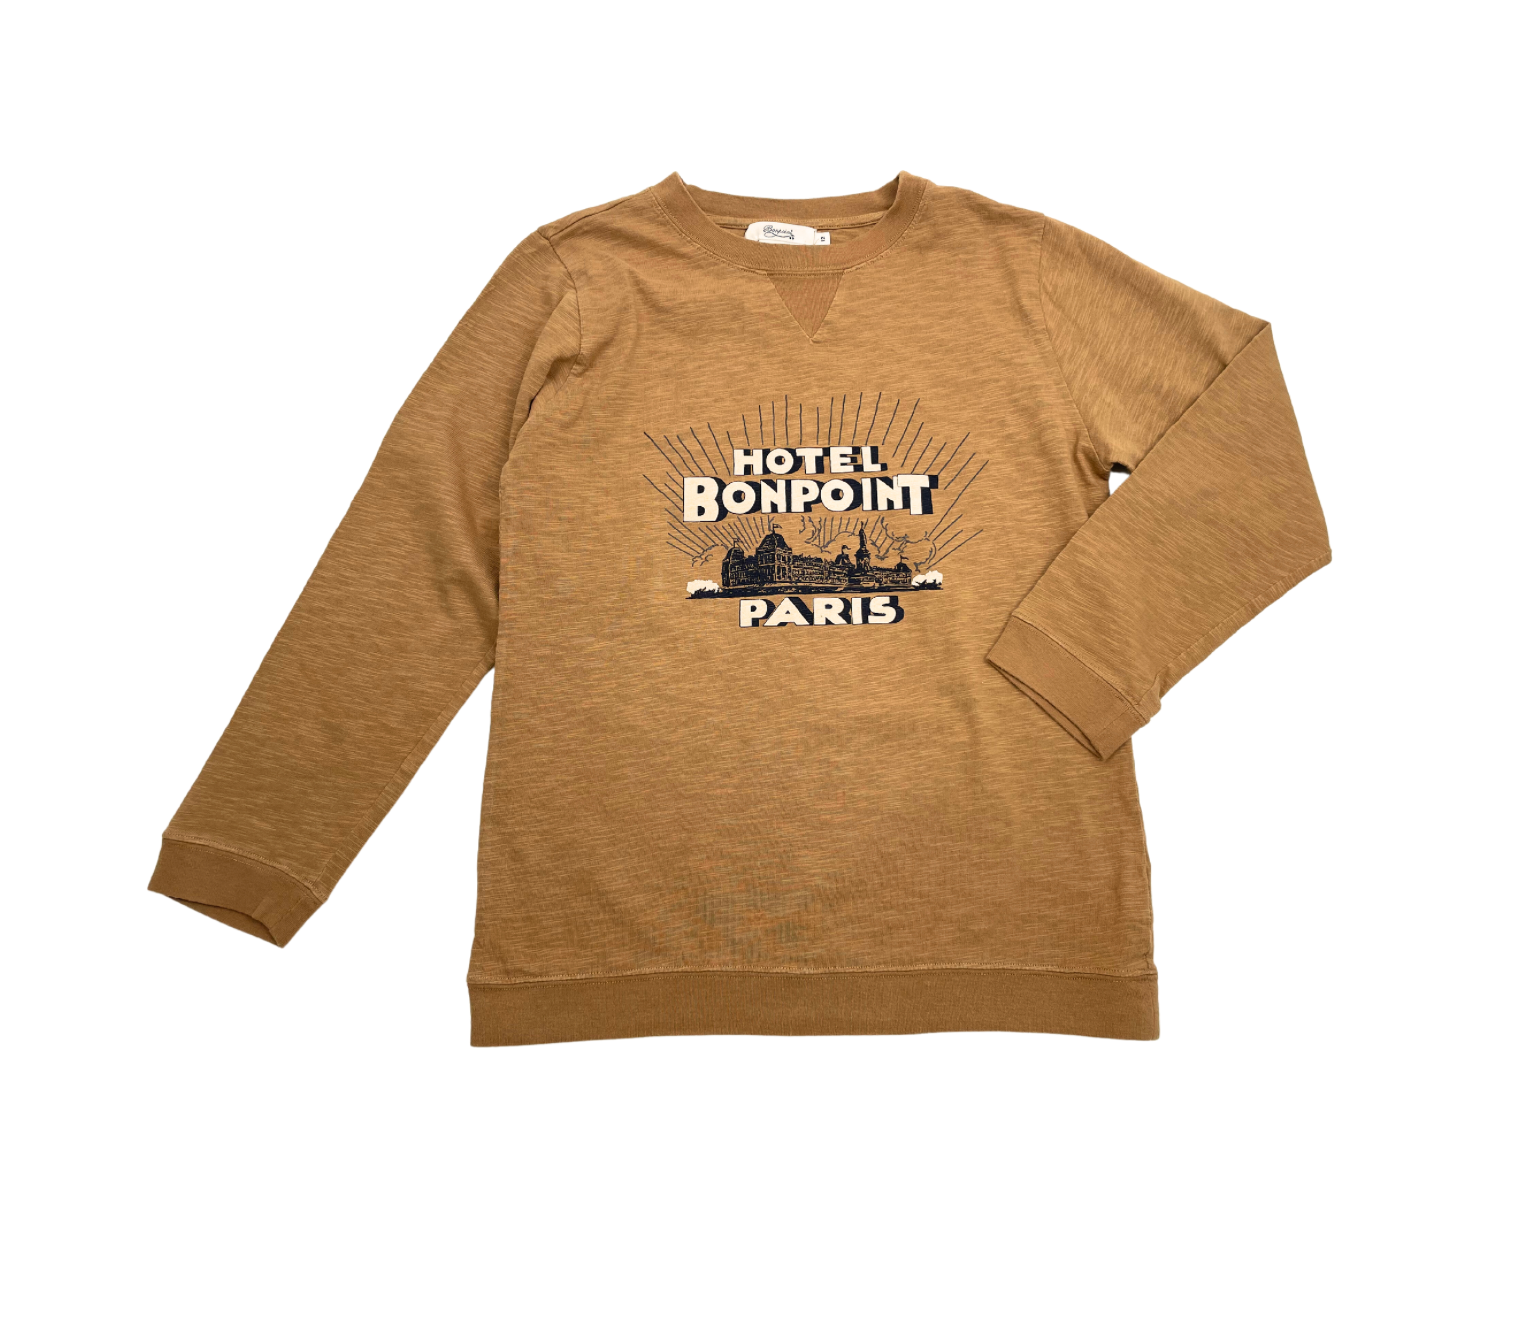 BONPOINT - T-shirt marron "hotel bonpoint paris" - 12 ans